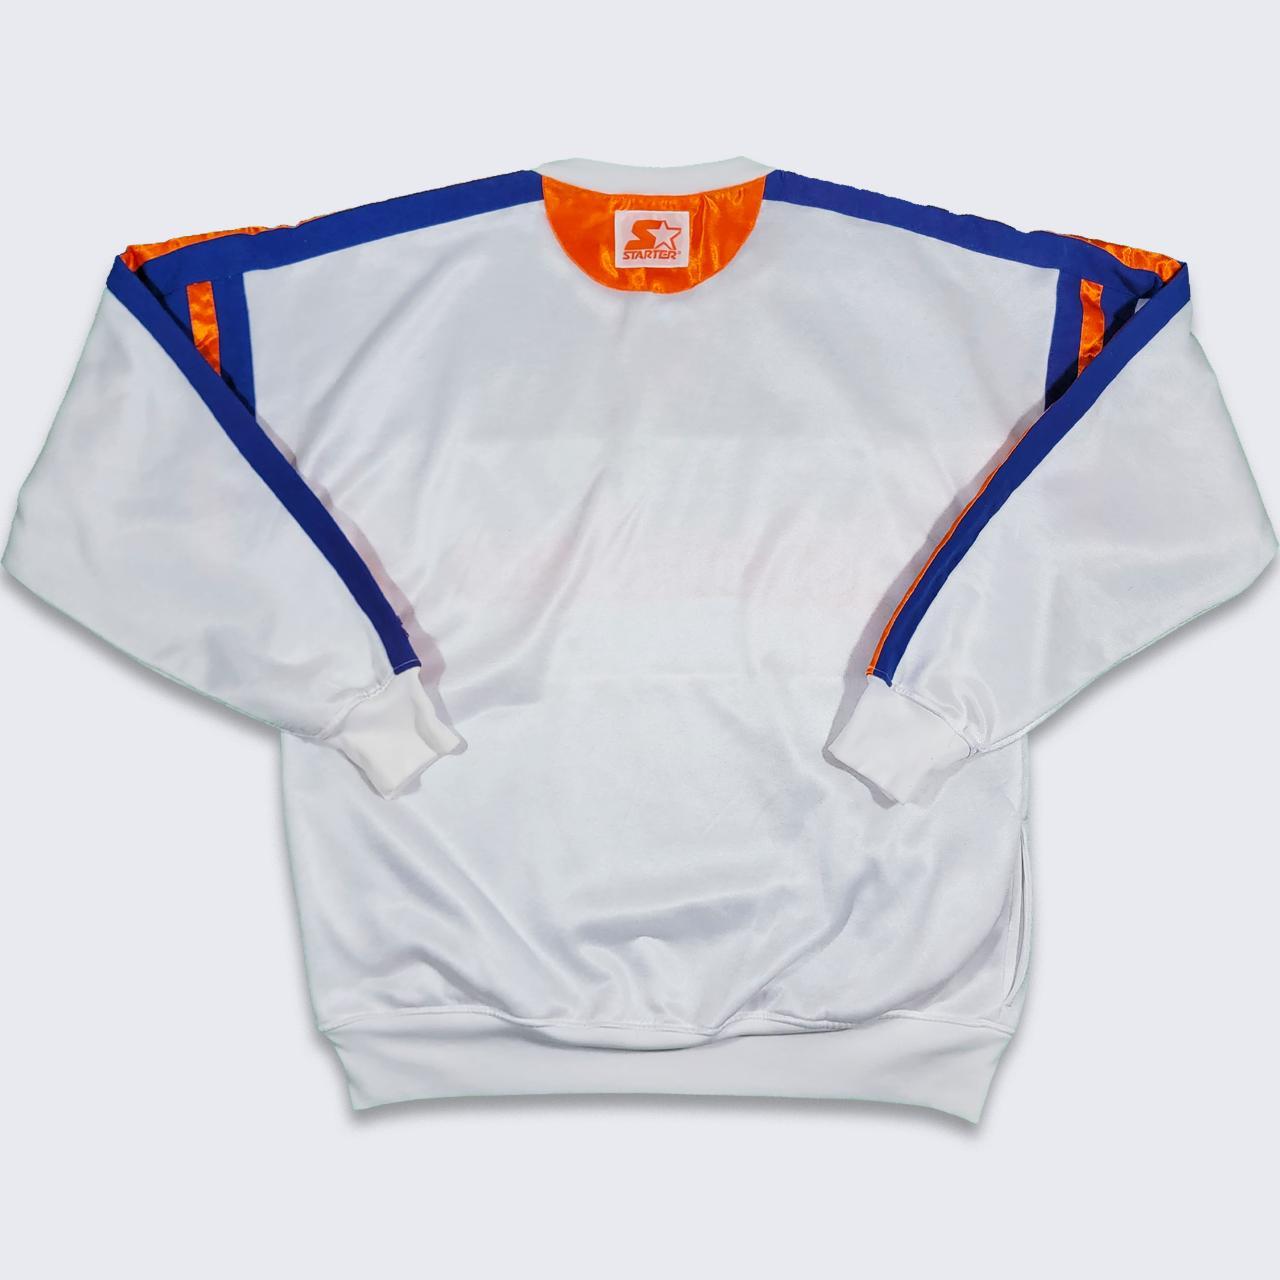 Vintage New York Islanders sweatshirt made in the - Depop